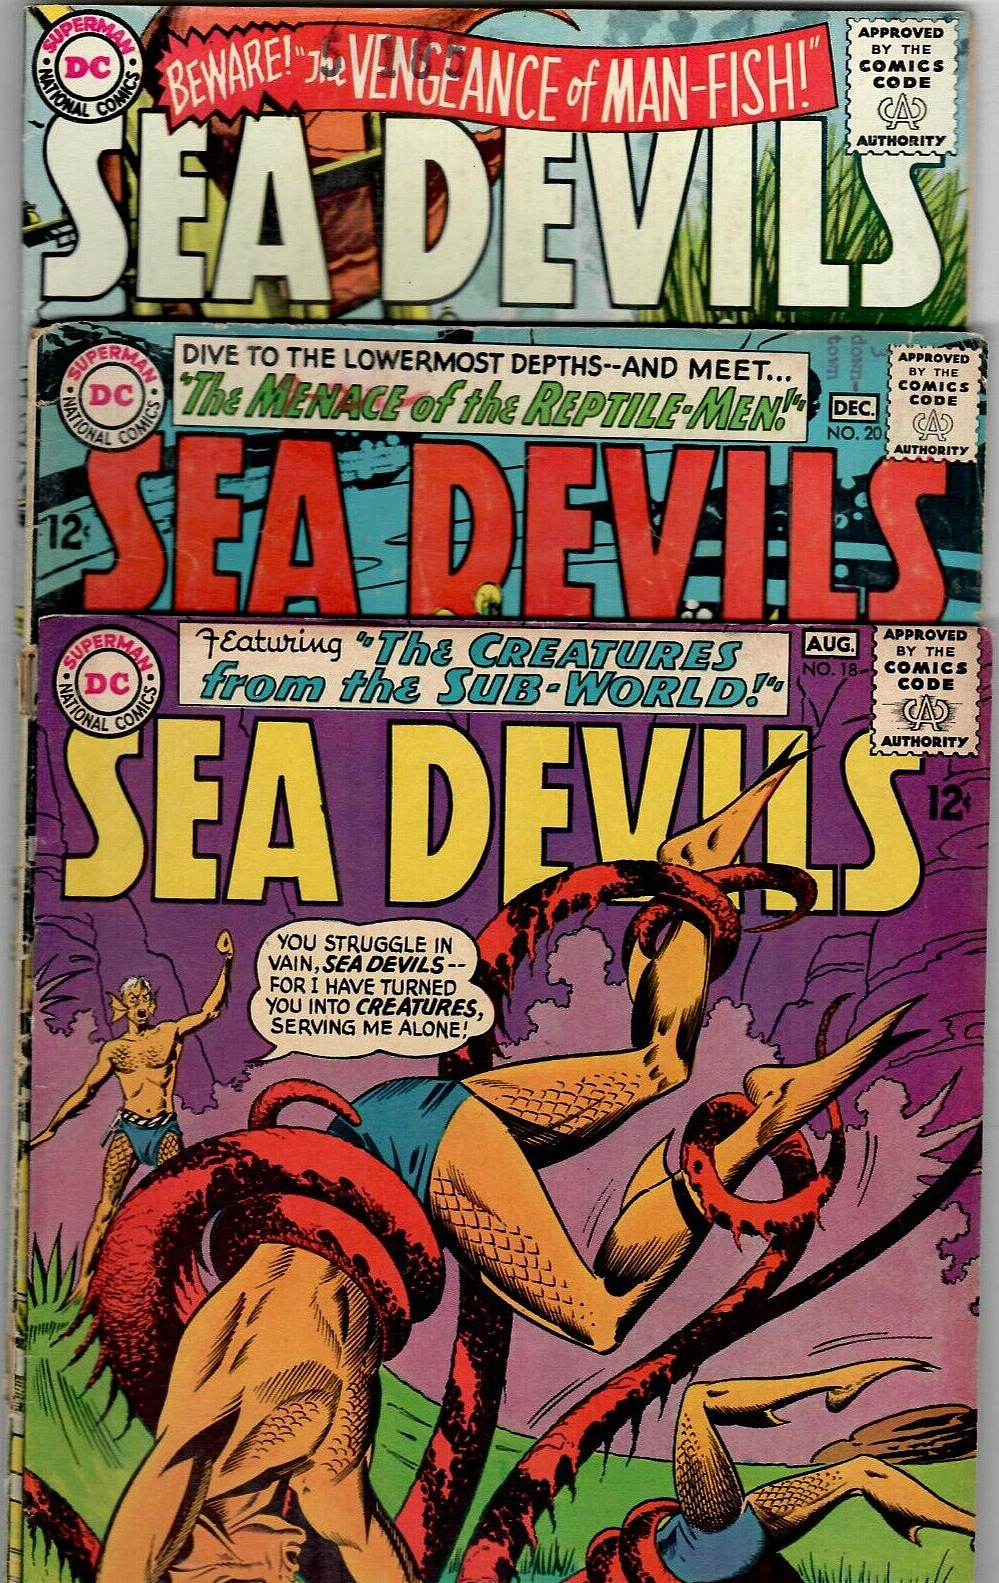 Sea Devils # 18, 20,24 D.C. 1964-1965 Silver-Age 12c 3 Book Lot 🦈🐡